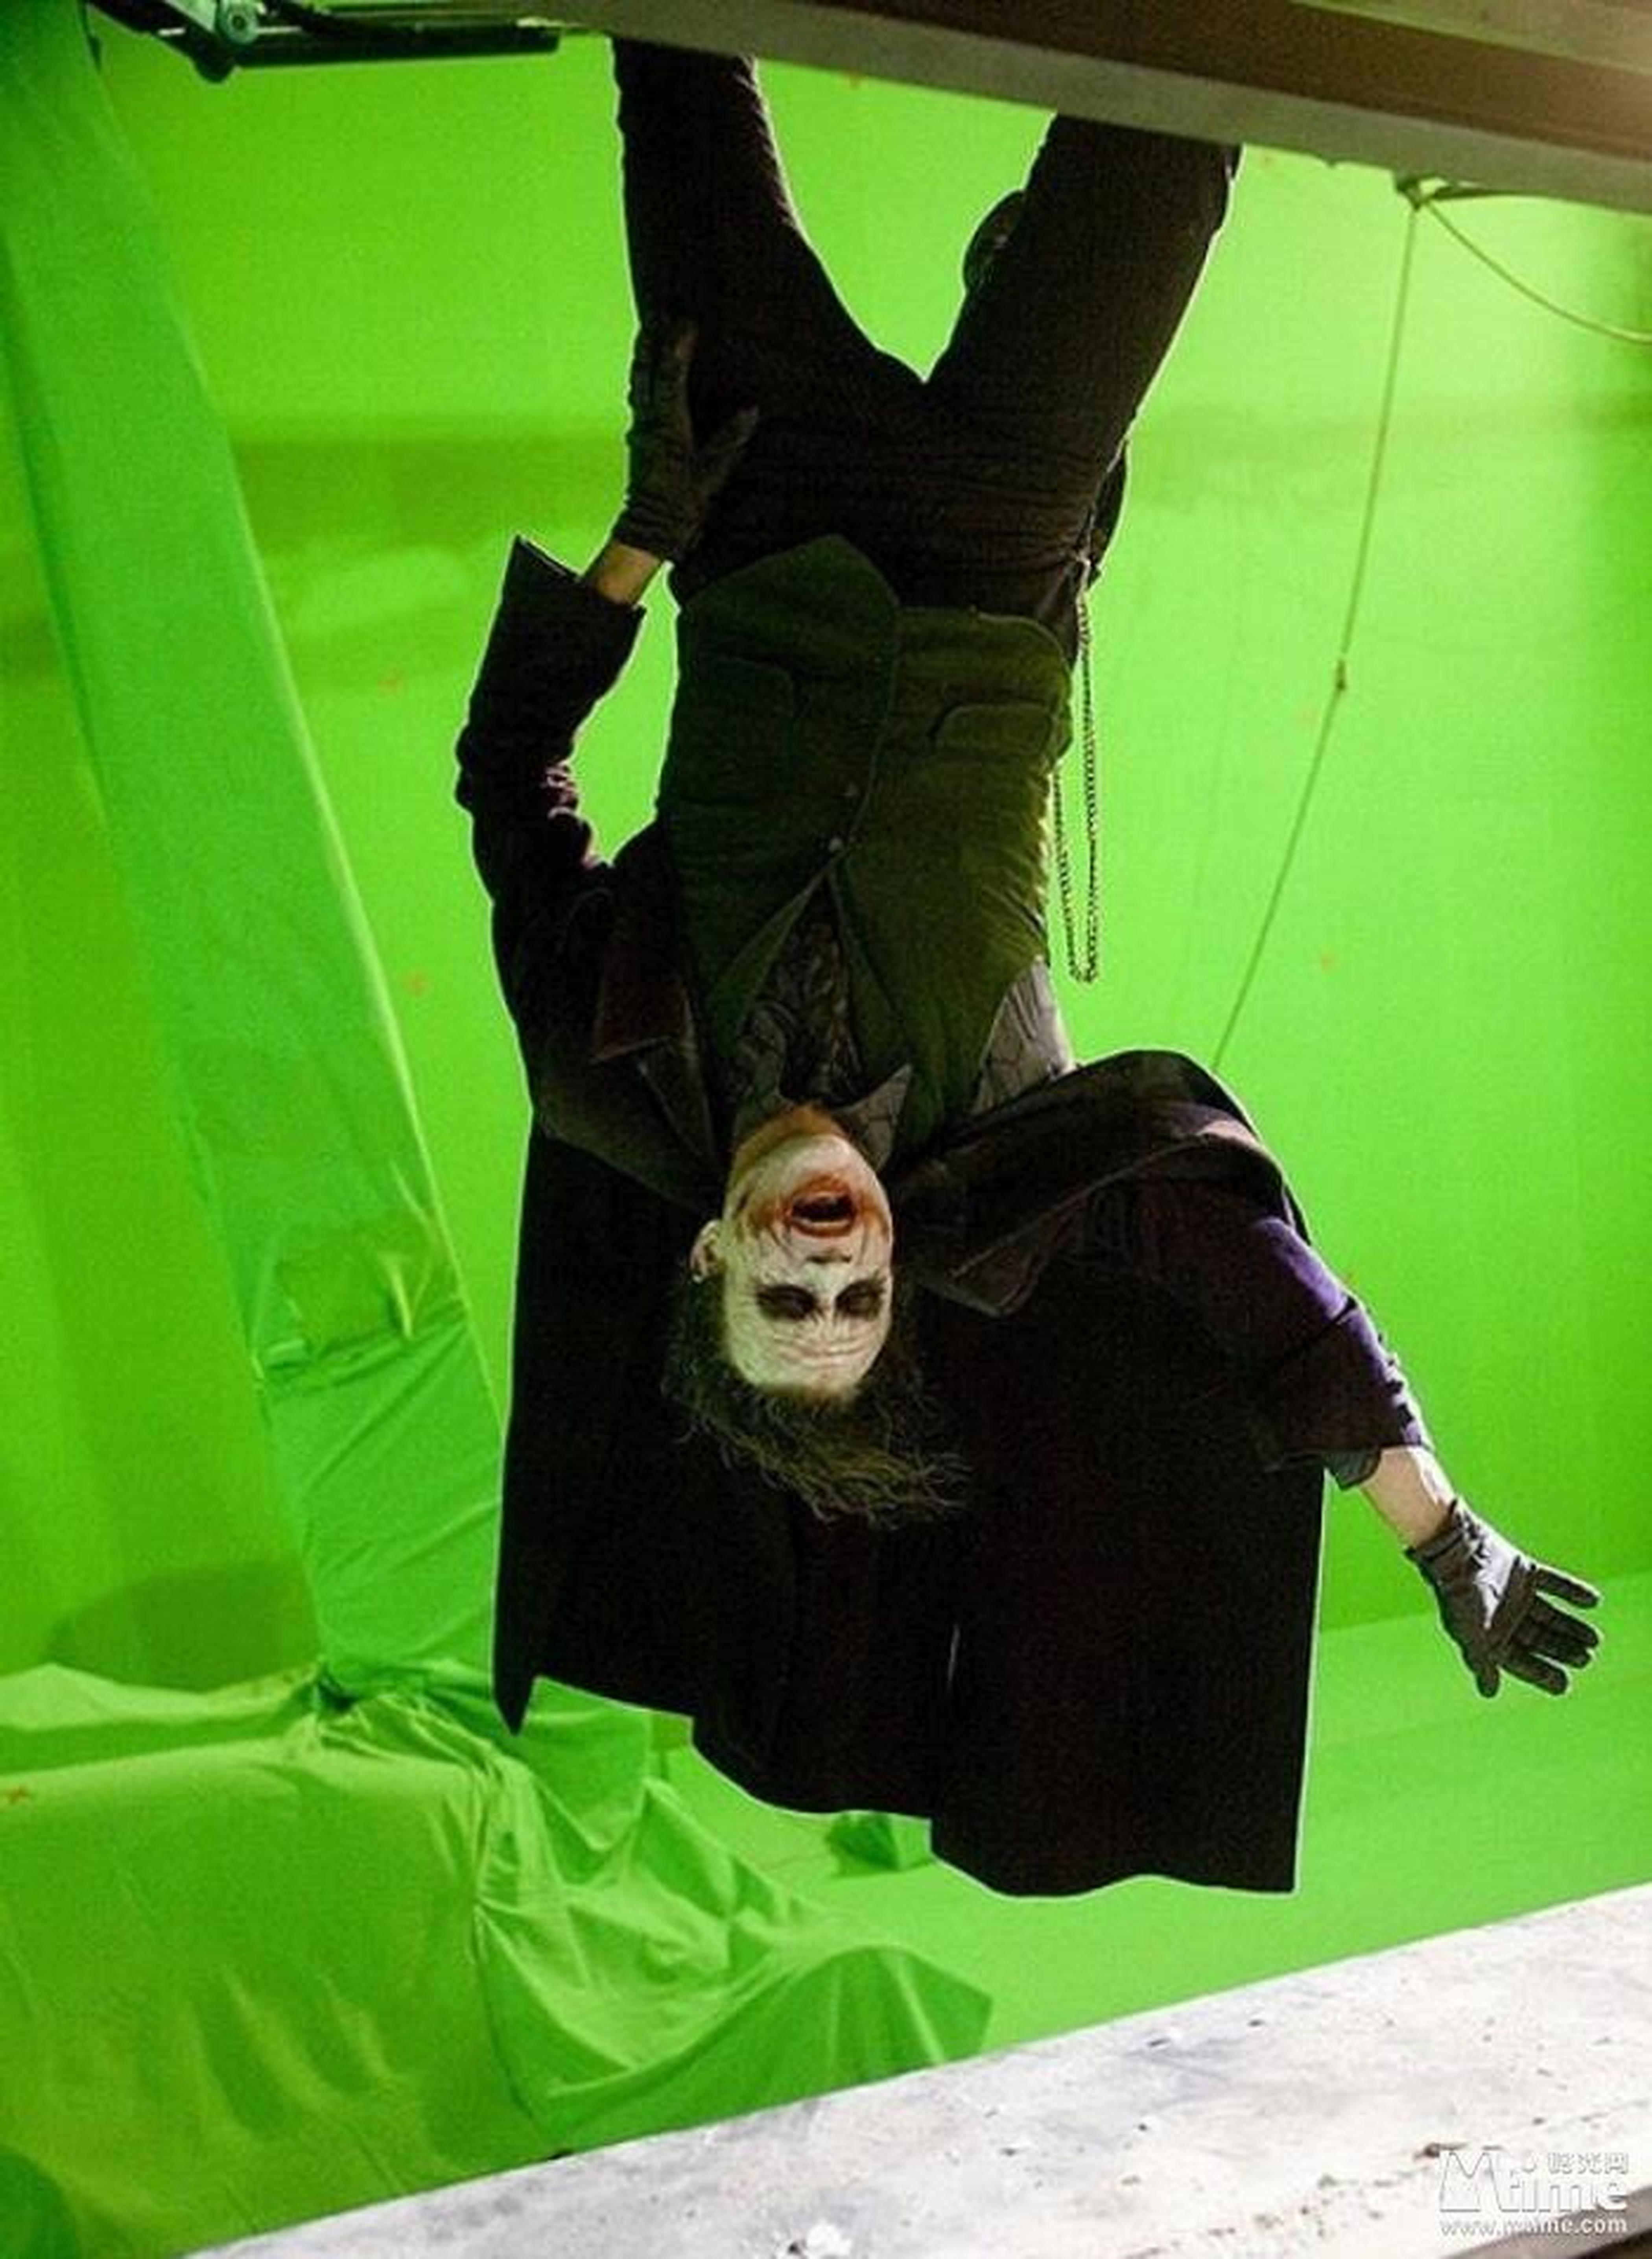 电影临近结尾时，蝙蝠侠将小丑吊挂在楼上，其实是在绿幕棚内拍摄的